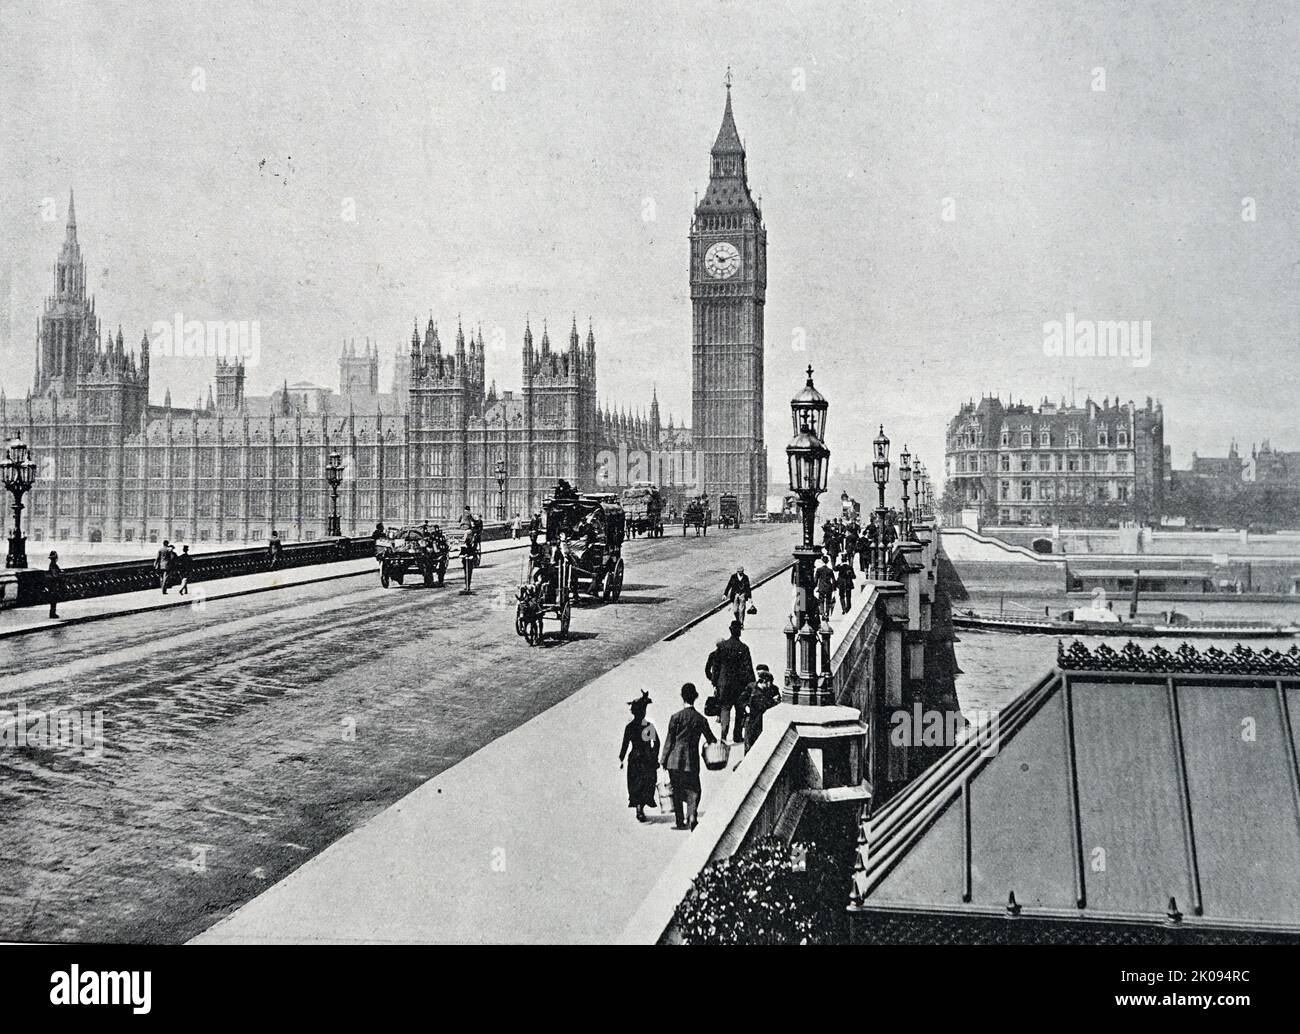 Le pont de Westminster est un pont routier au-dessus de la Tamise à Londres, reliant Westminster du côté ouest et Lambeth du côté est. Construit entre 1856 et 1862. Banque D'Images